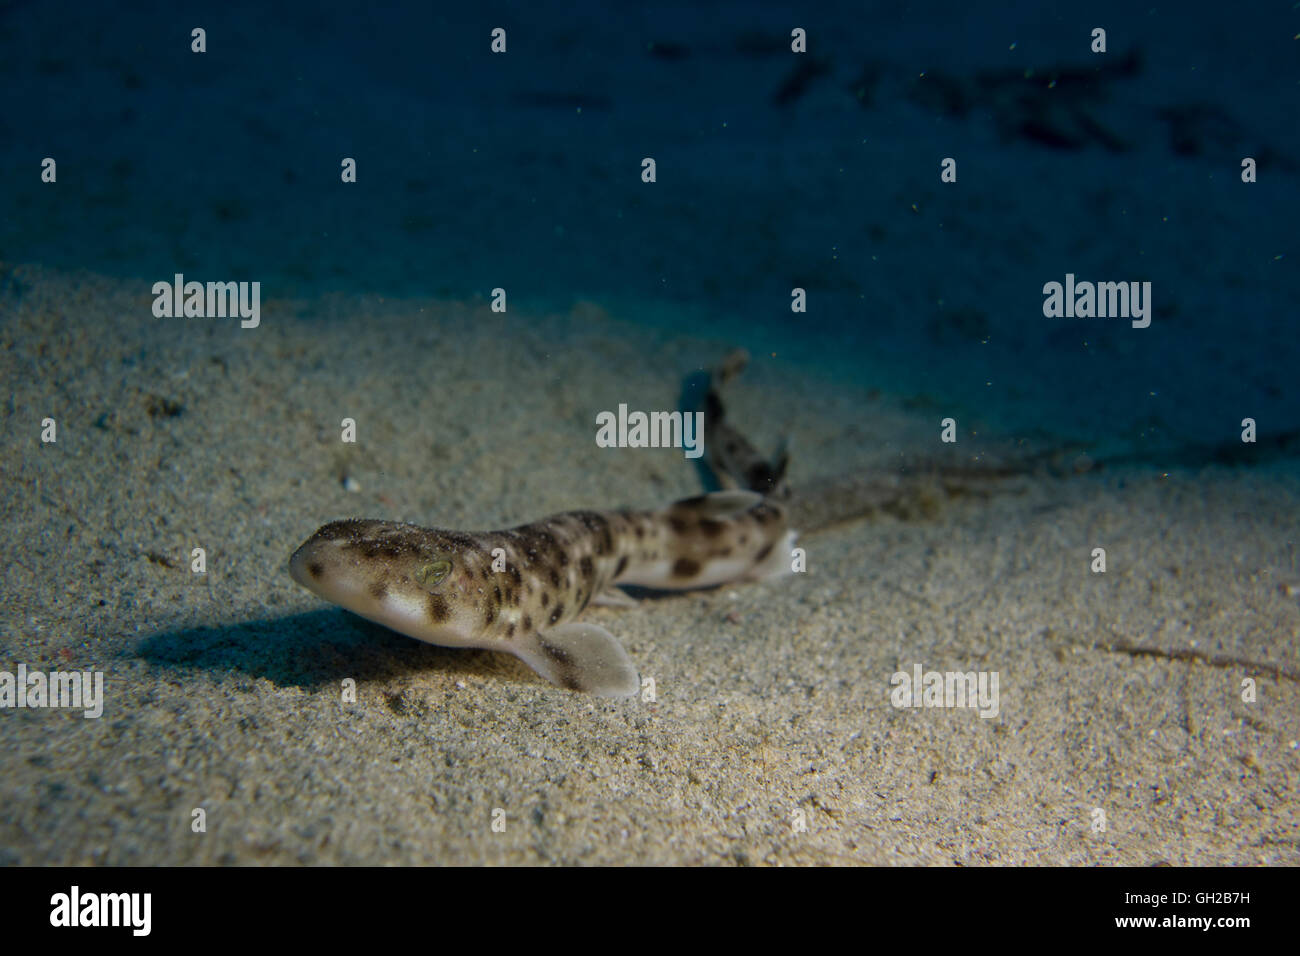 Kleinere entdeckt Seekatze Scyliorhinus Canicula, vom Mittelmeer entfernt. Dieses Bild wurde in Malta aufgenommen. Stockfoto